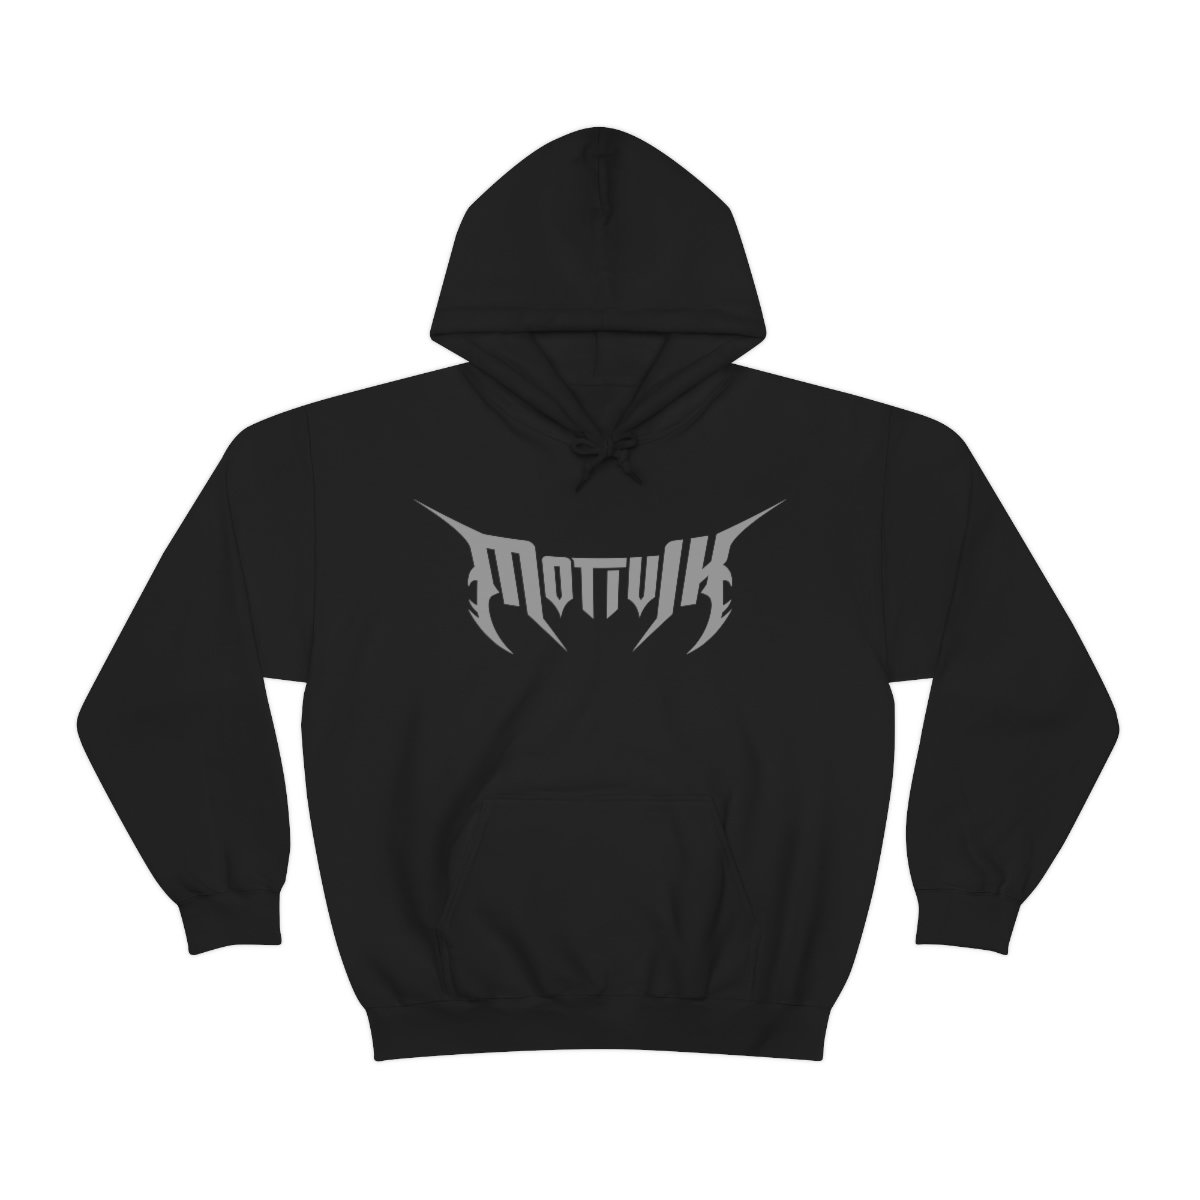 Motivik Grey Logo Pullover Hooded Sweatshirt